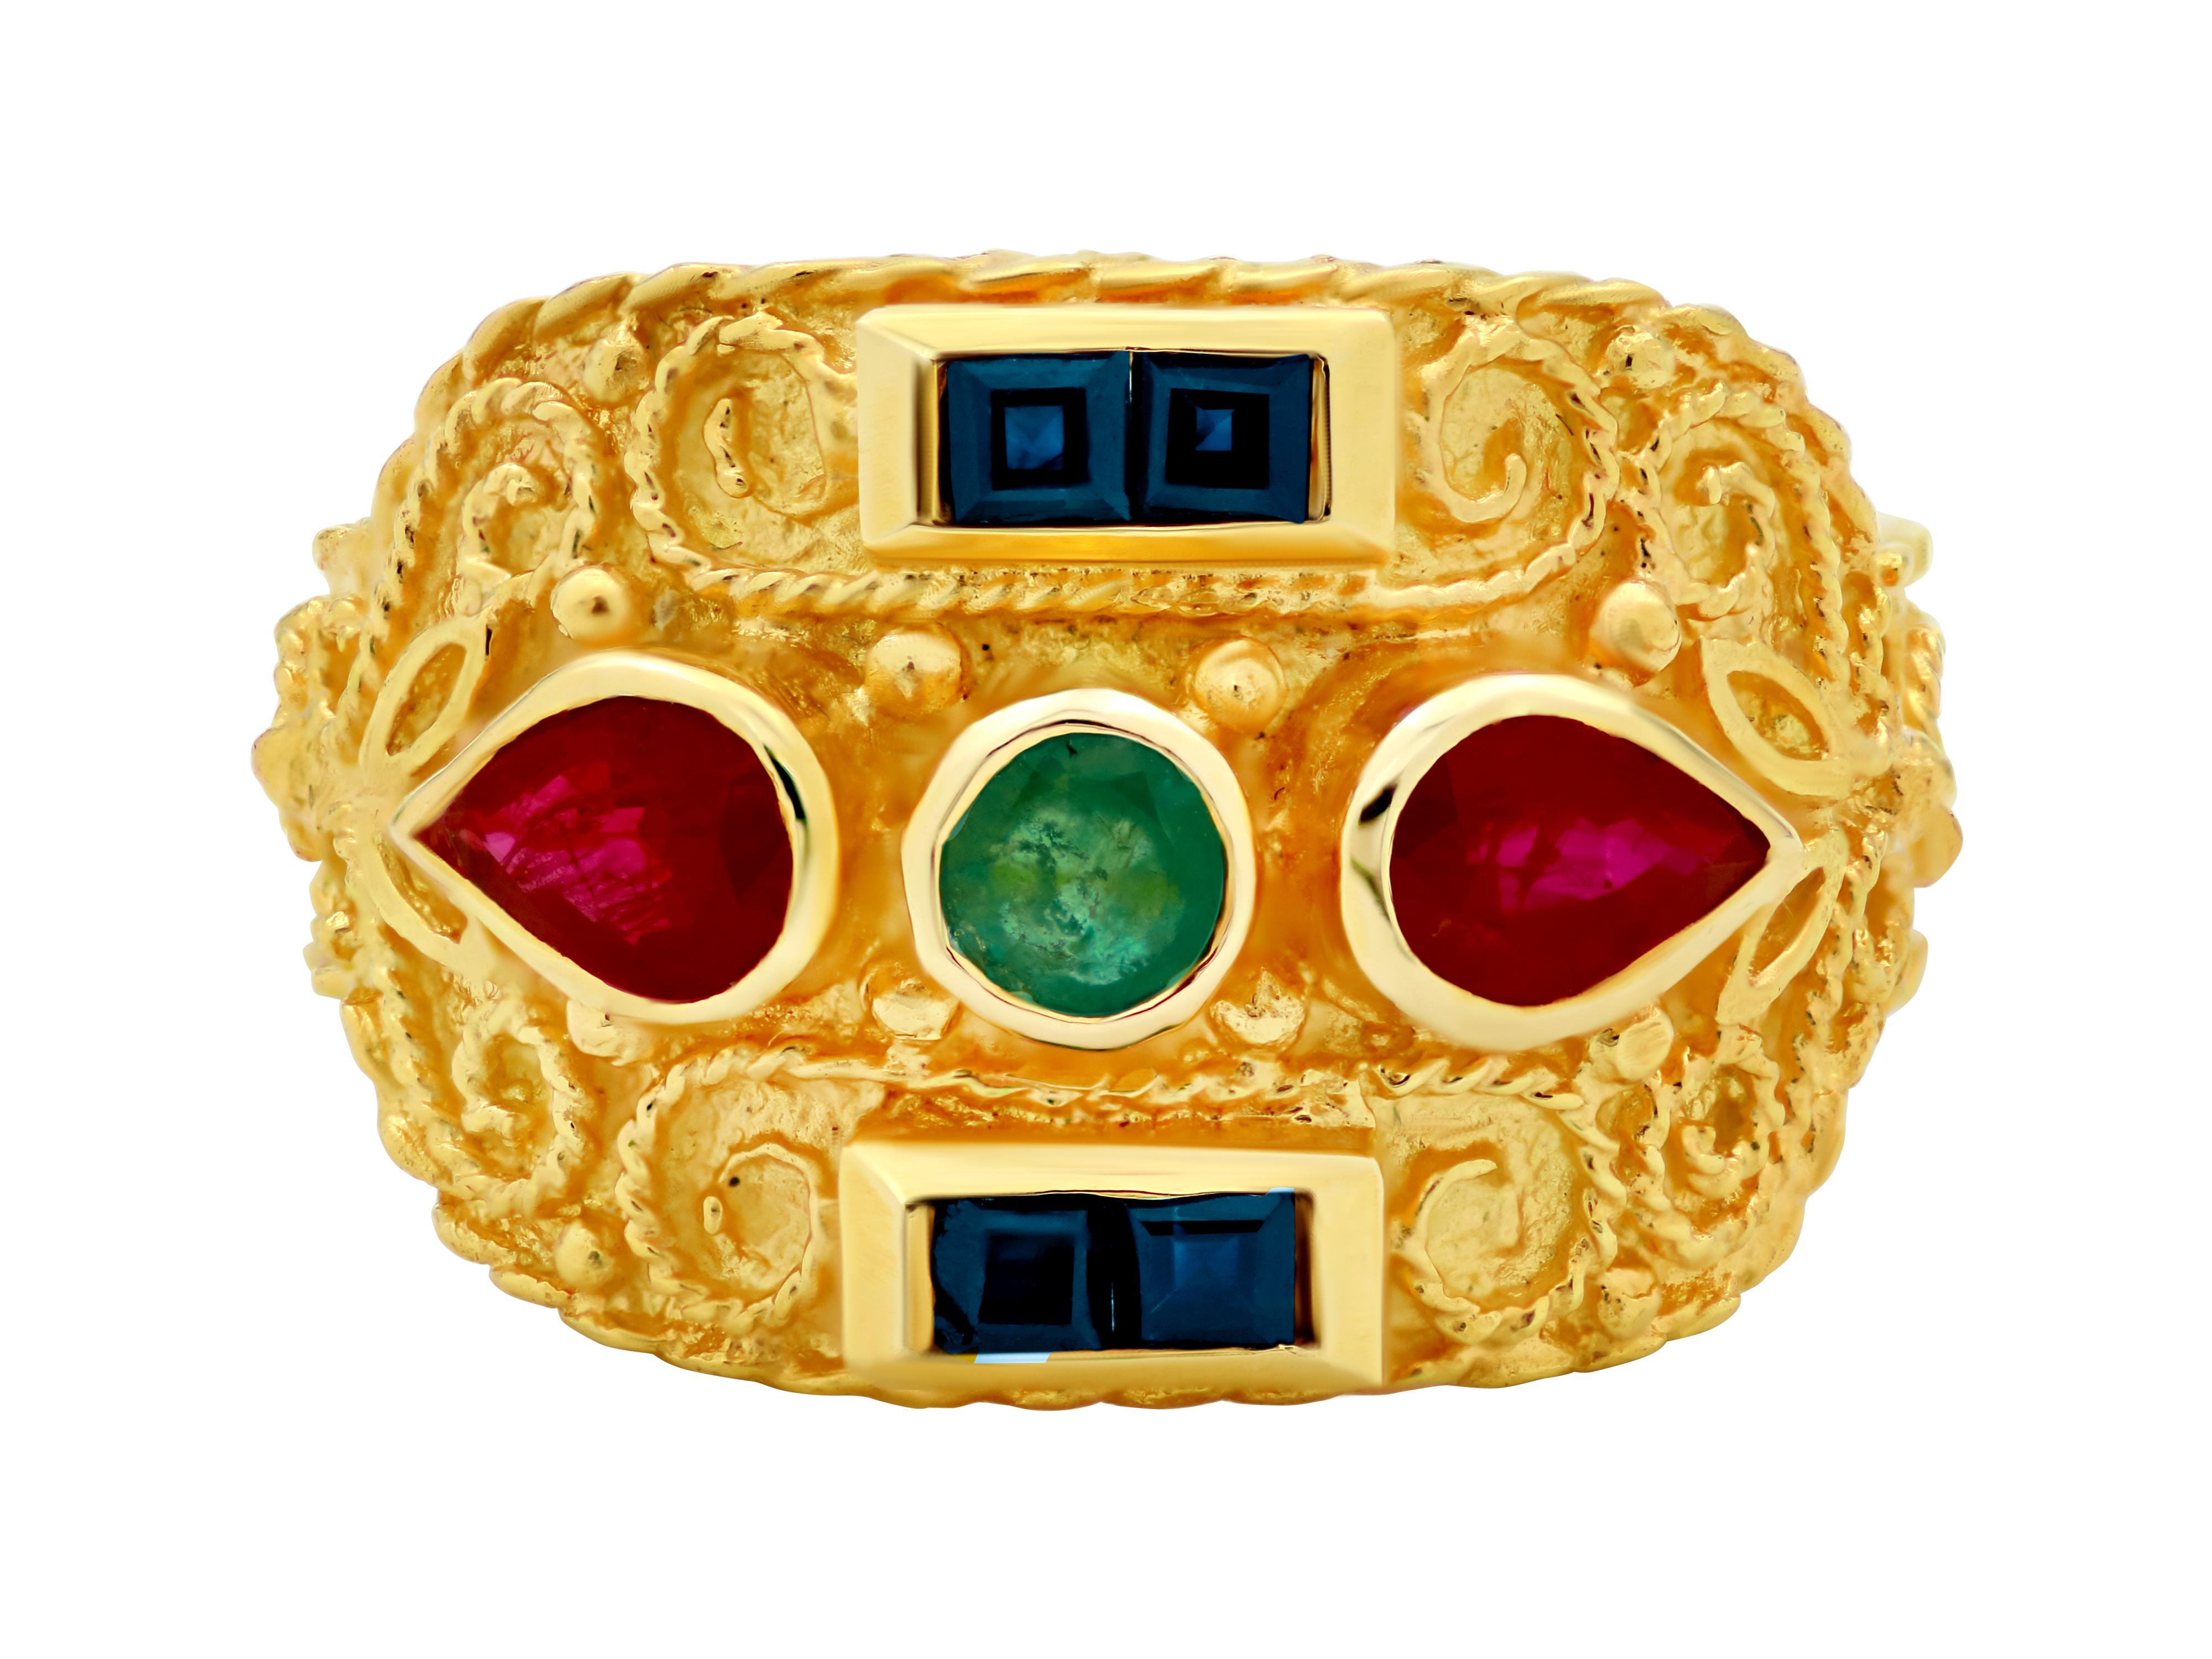 Byzantinischer Ring aus 18 Karat Gelbgold mit einer dynamischen Breite und einem schmalen Band, das Komfort bietet. Eine Vielzahl von 0,60 Karat natürlichen Edelsteinen, die das authentische mehrfarbige Aussehen der byzantinischen Ära vermitteln.